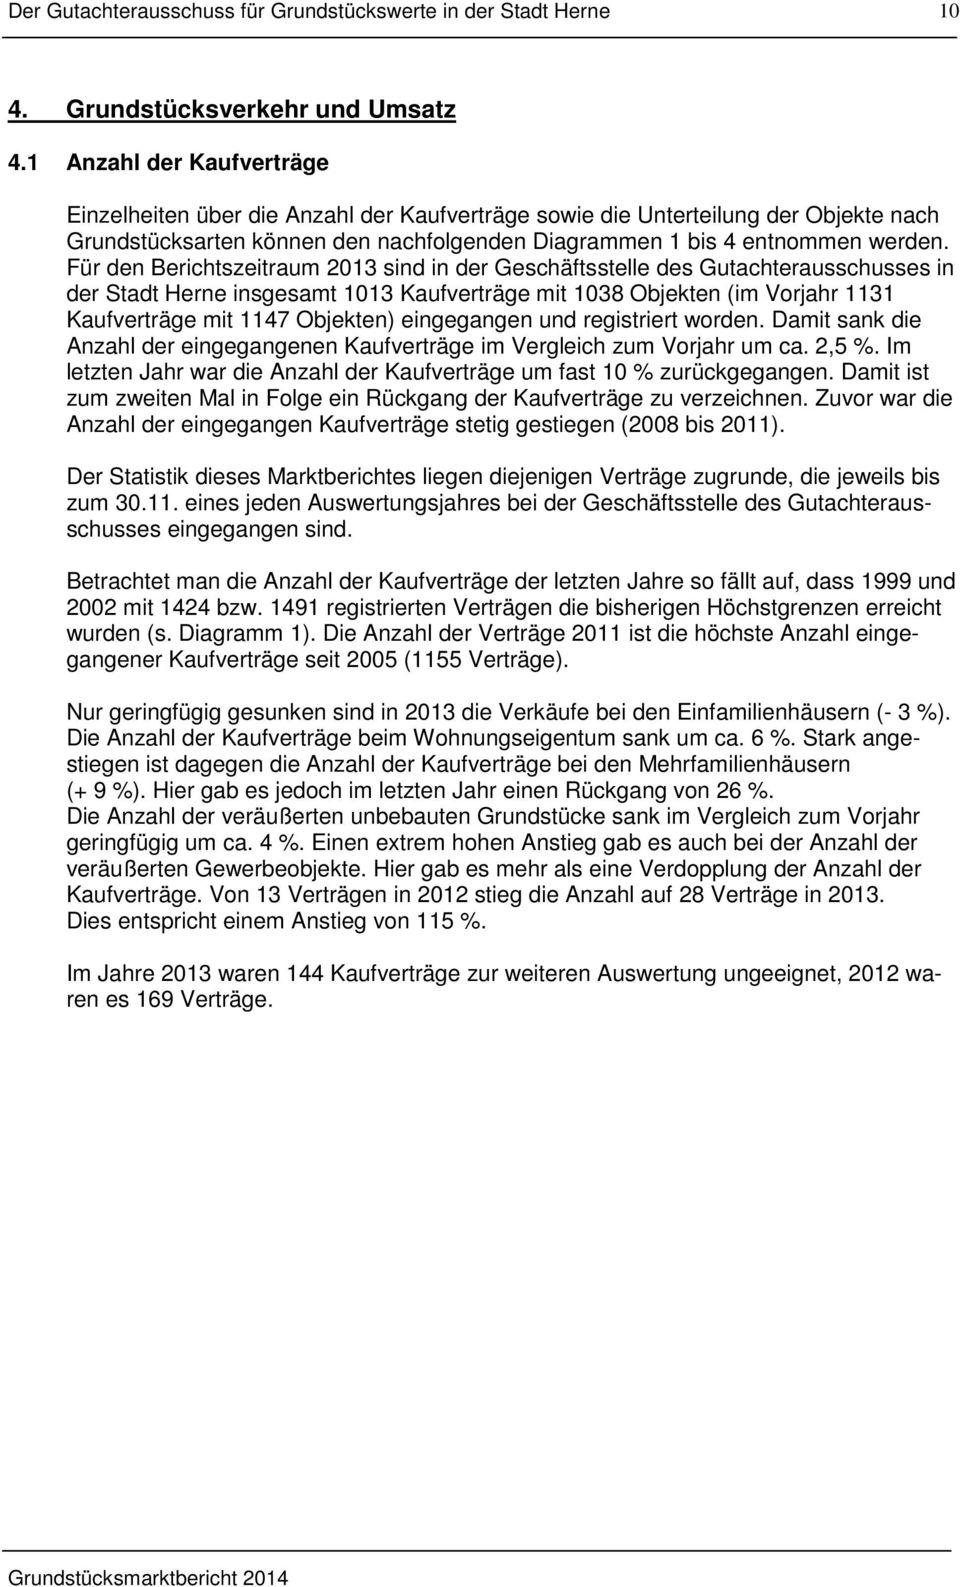 Für den Berichtszeitraum 2013 sind in der Geschäftsstelle des Gutachterausschusses in der Stadt Herne insgesamt 1013 Kaufverträge mit 1038 Objekten (im Vorjahr 1131 Kaufverträge mit 1147 Objekten)